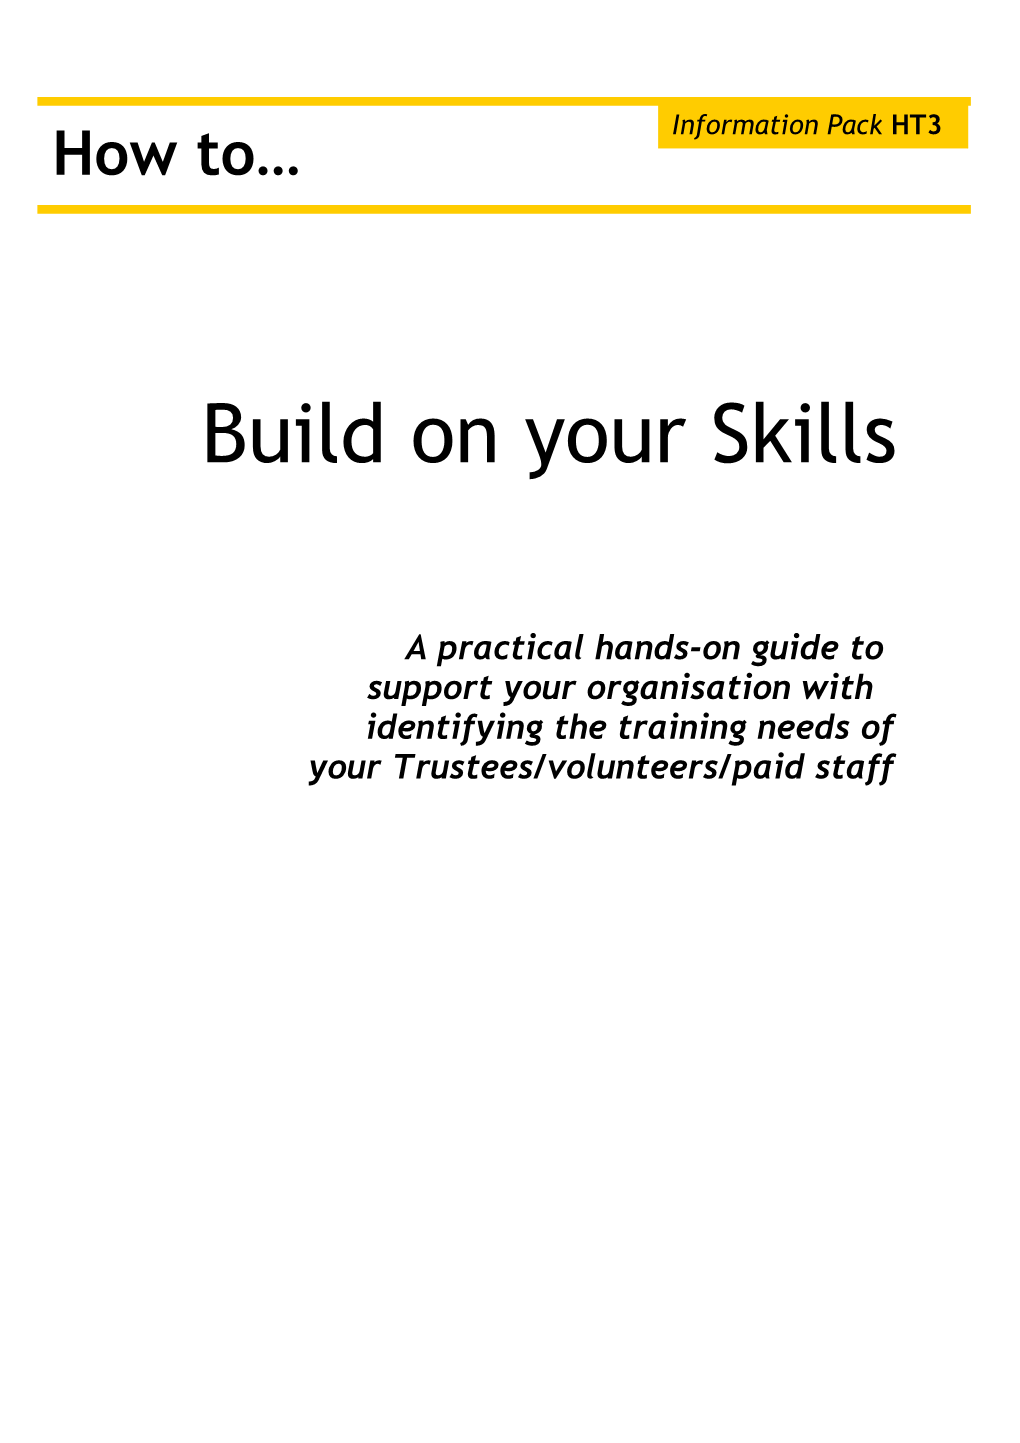 Build on Your Skills (BYS) Workshop